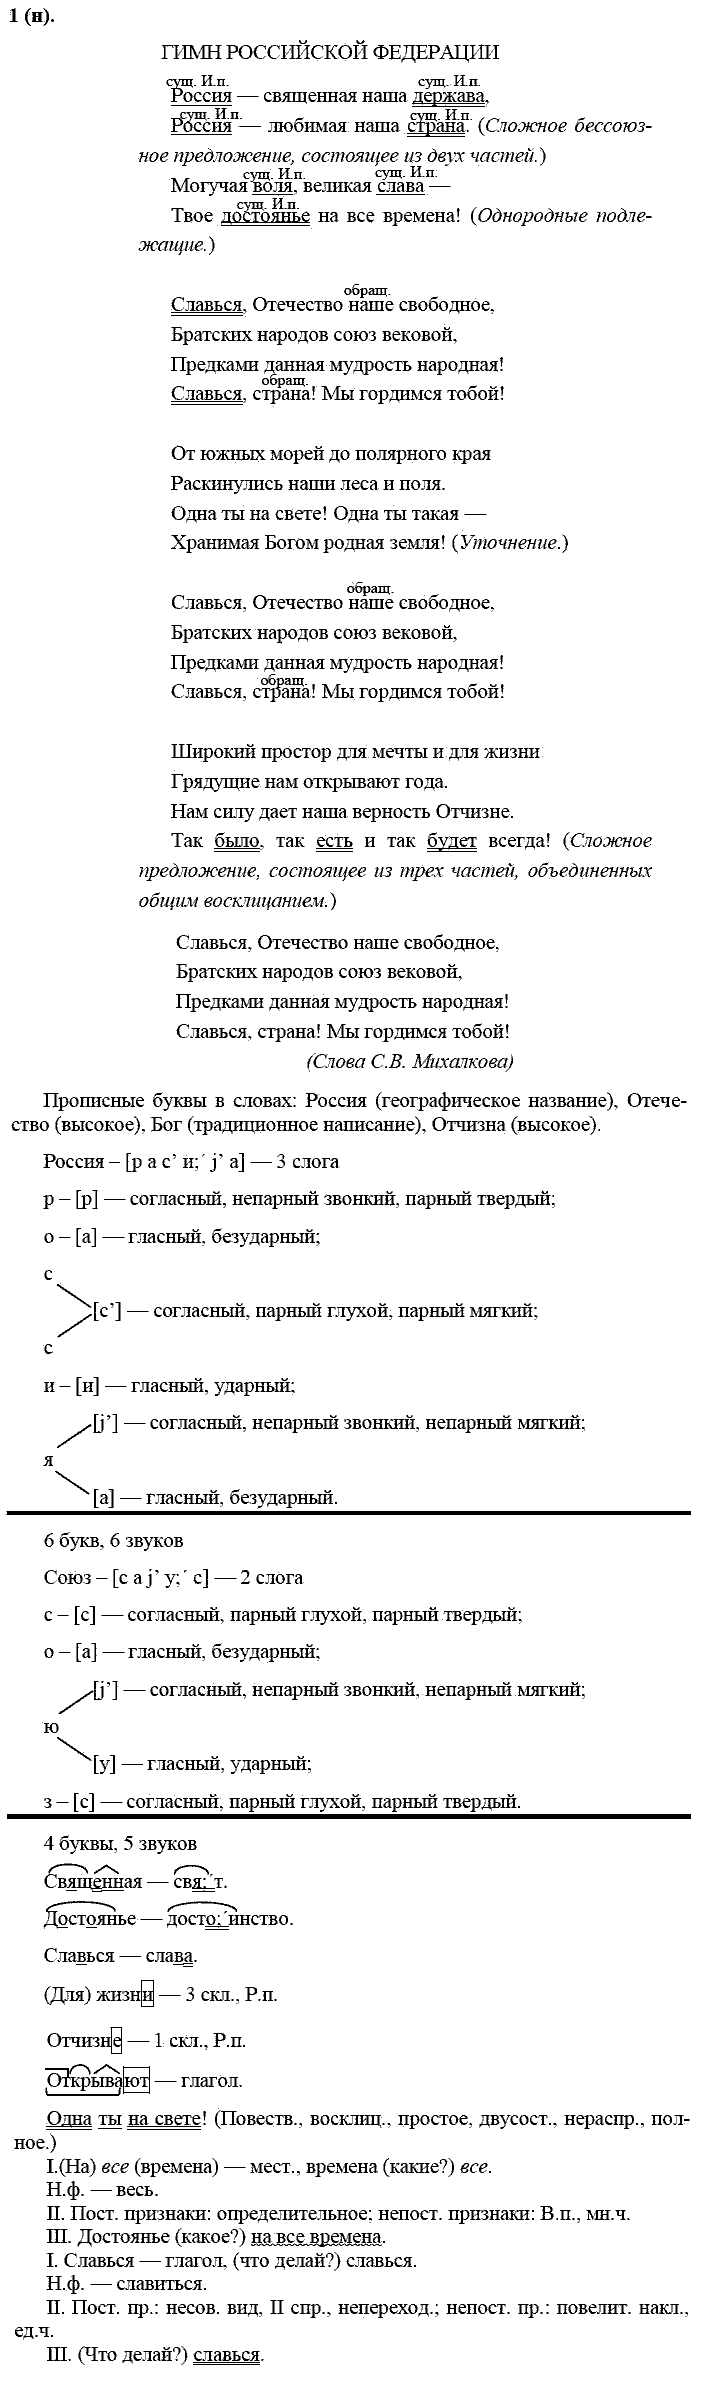 Русский язык, 11 класс, Власенков, Рыбченков, 2009-2014, задание: 1 (н)